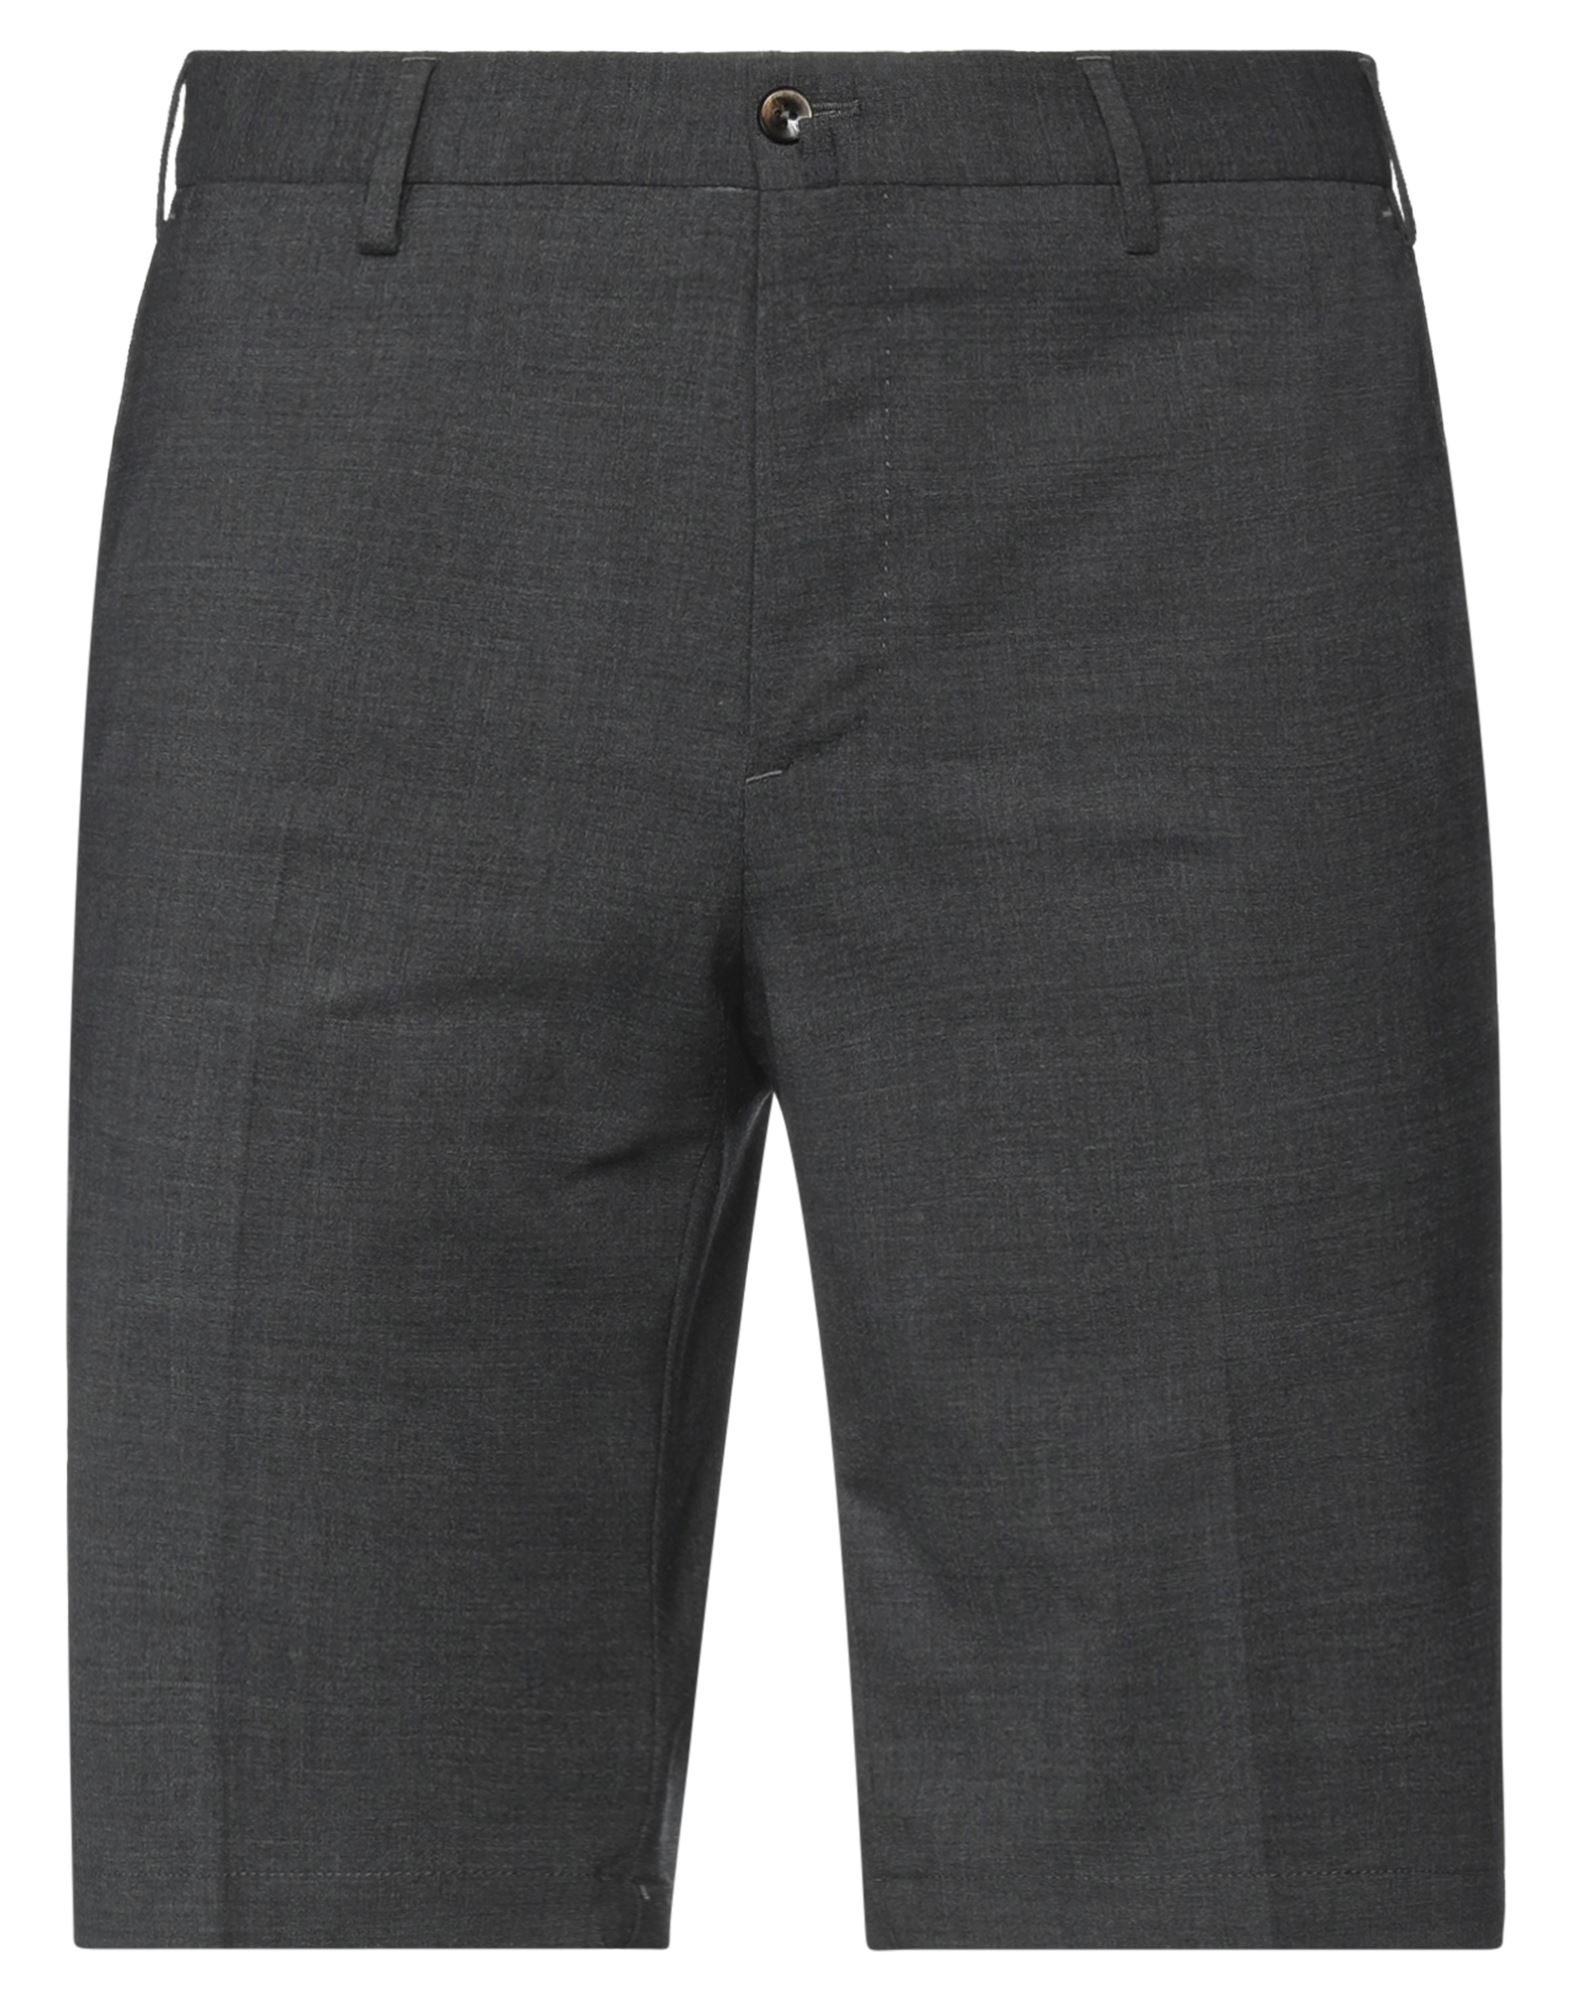 Pt Torino Man Shorts & Bermuda Shorts Steel Grey Size 32 Virgin Wool, Elastane